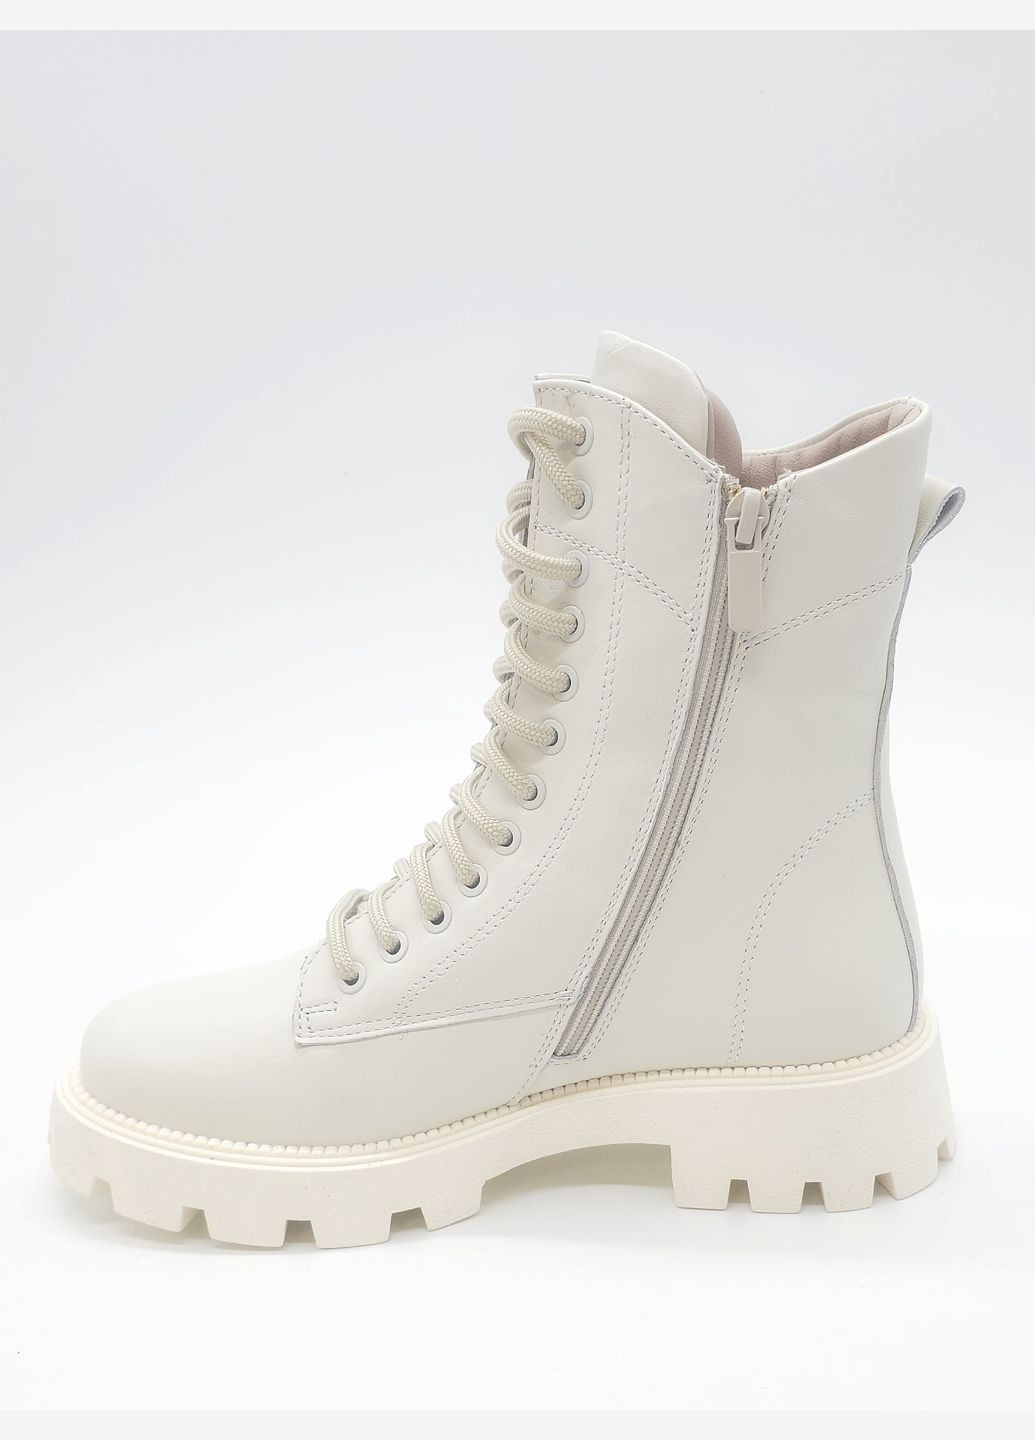 Осенние женские ботинки зимние молочные кожаные k-17-2 23 см (р) Kento